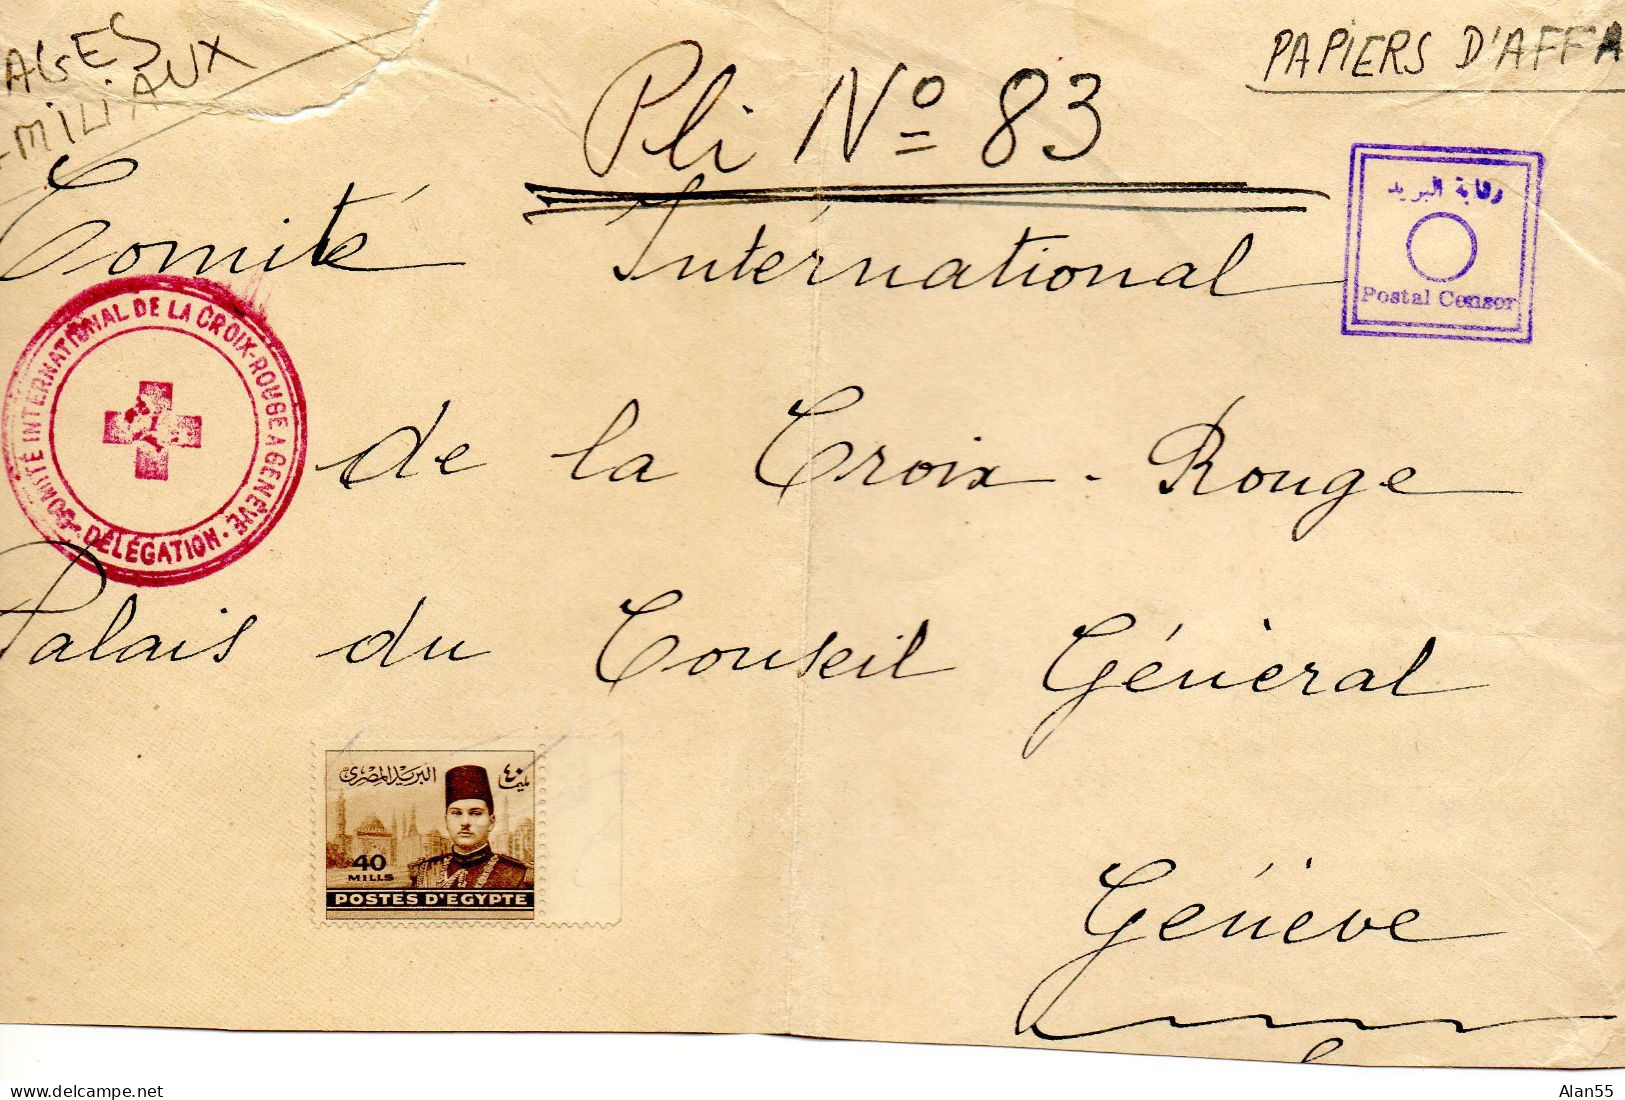 EGYPTE. 194. COMITE INTERNATIONAL CROIX-ROUGE  EN EGYPTE POUR C.I.C.R. GENEVE (SUISSE).CENSURE.(devant De Lettre) - Covers & Documents